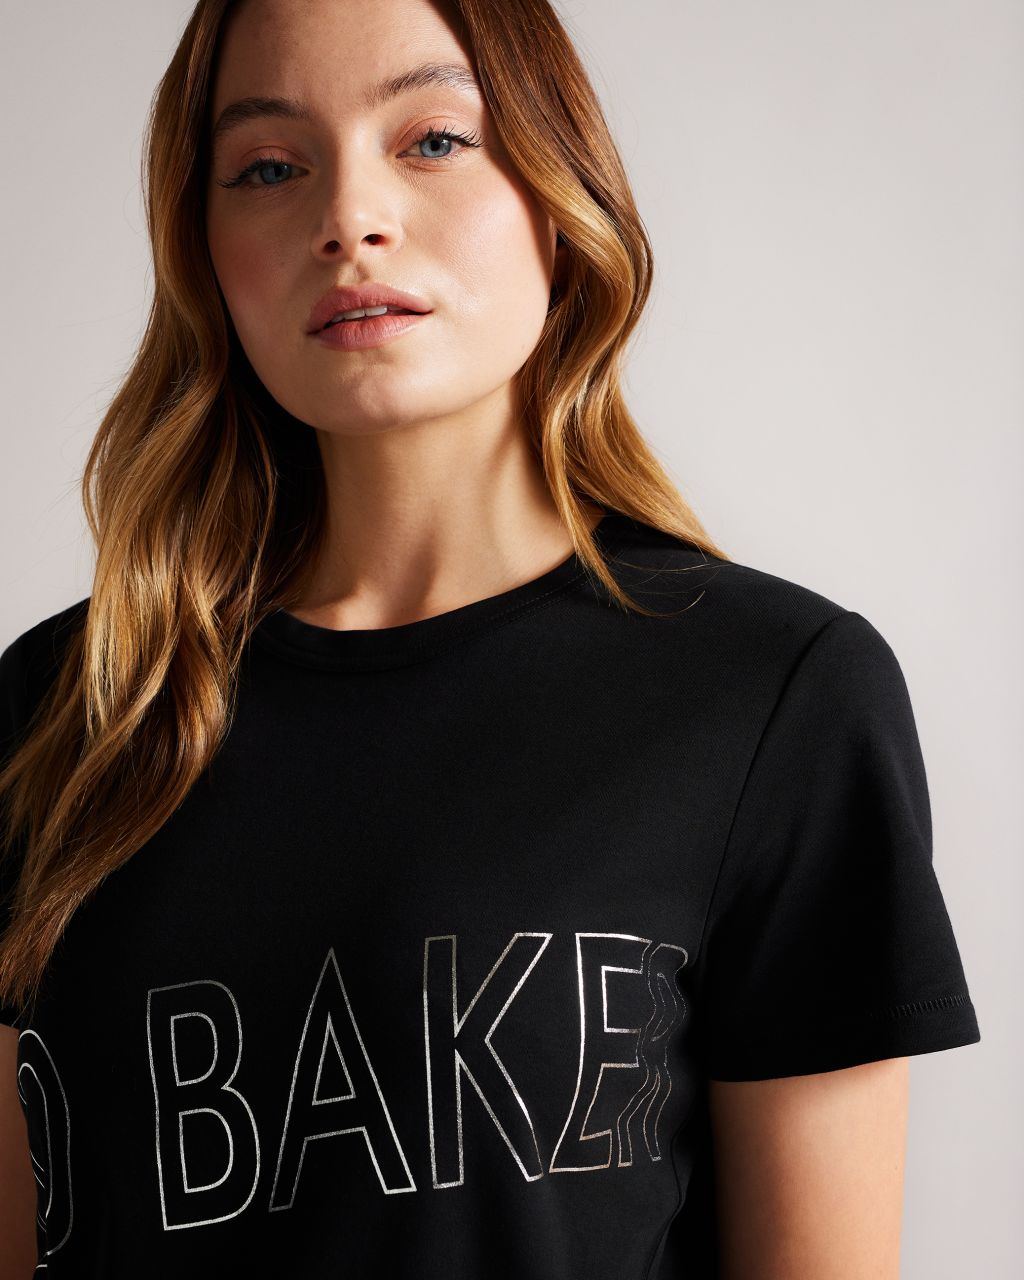 Ted Baker Women's Branded Foil Cotton T-Shirt in Black, Malom